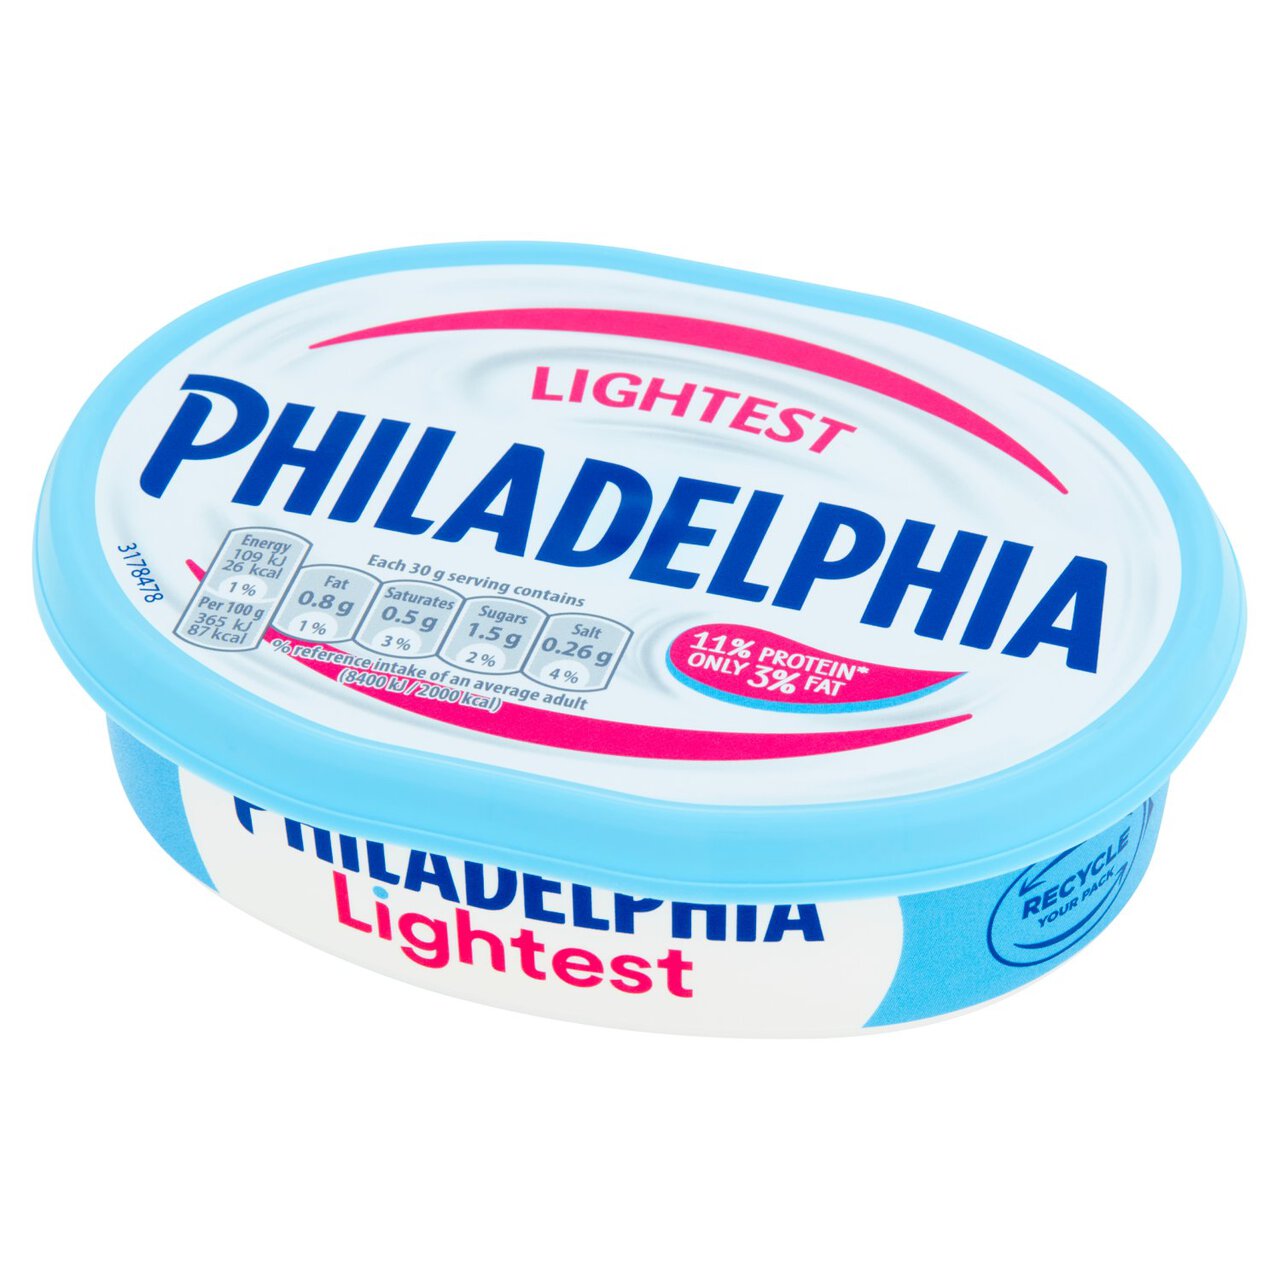 Philadelphia Lightest Soft Cheese 165g